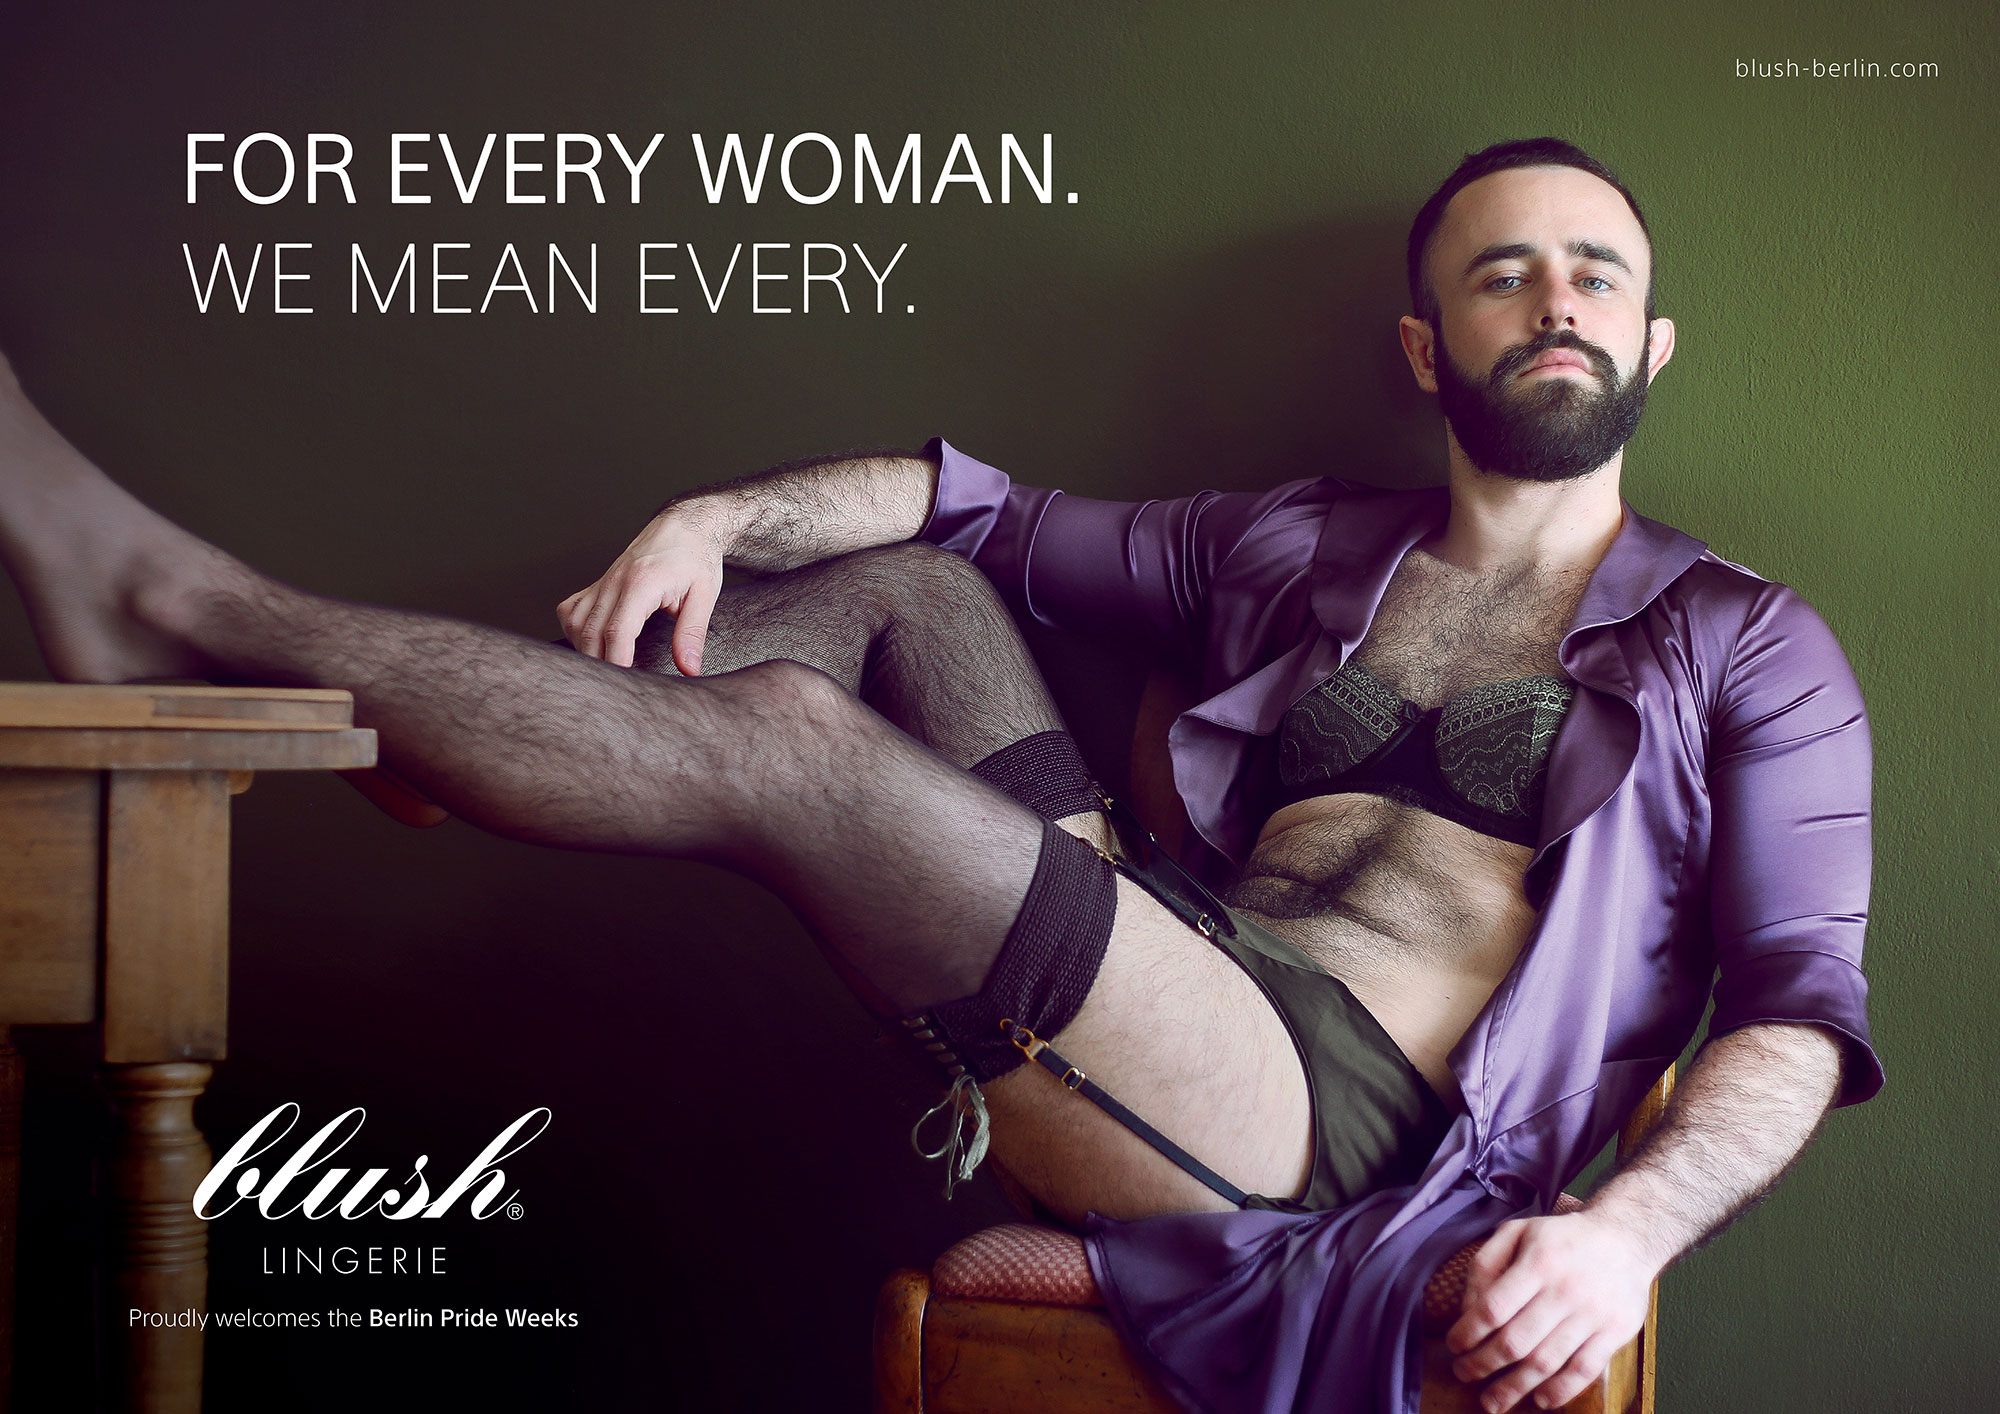 Blush poster